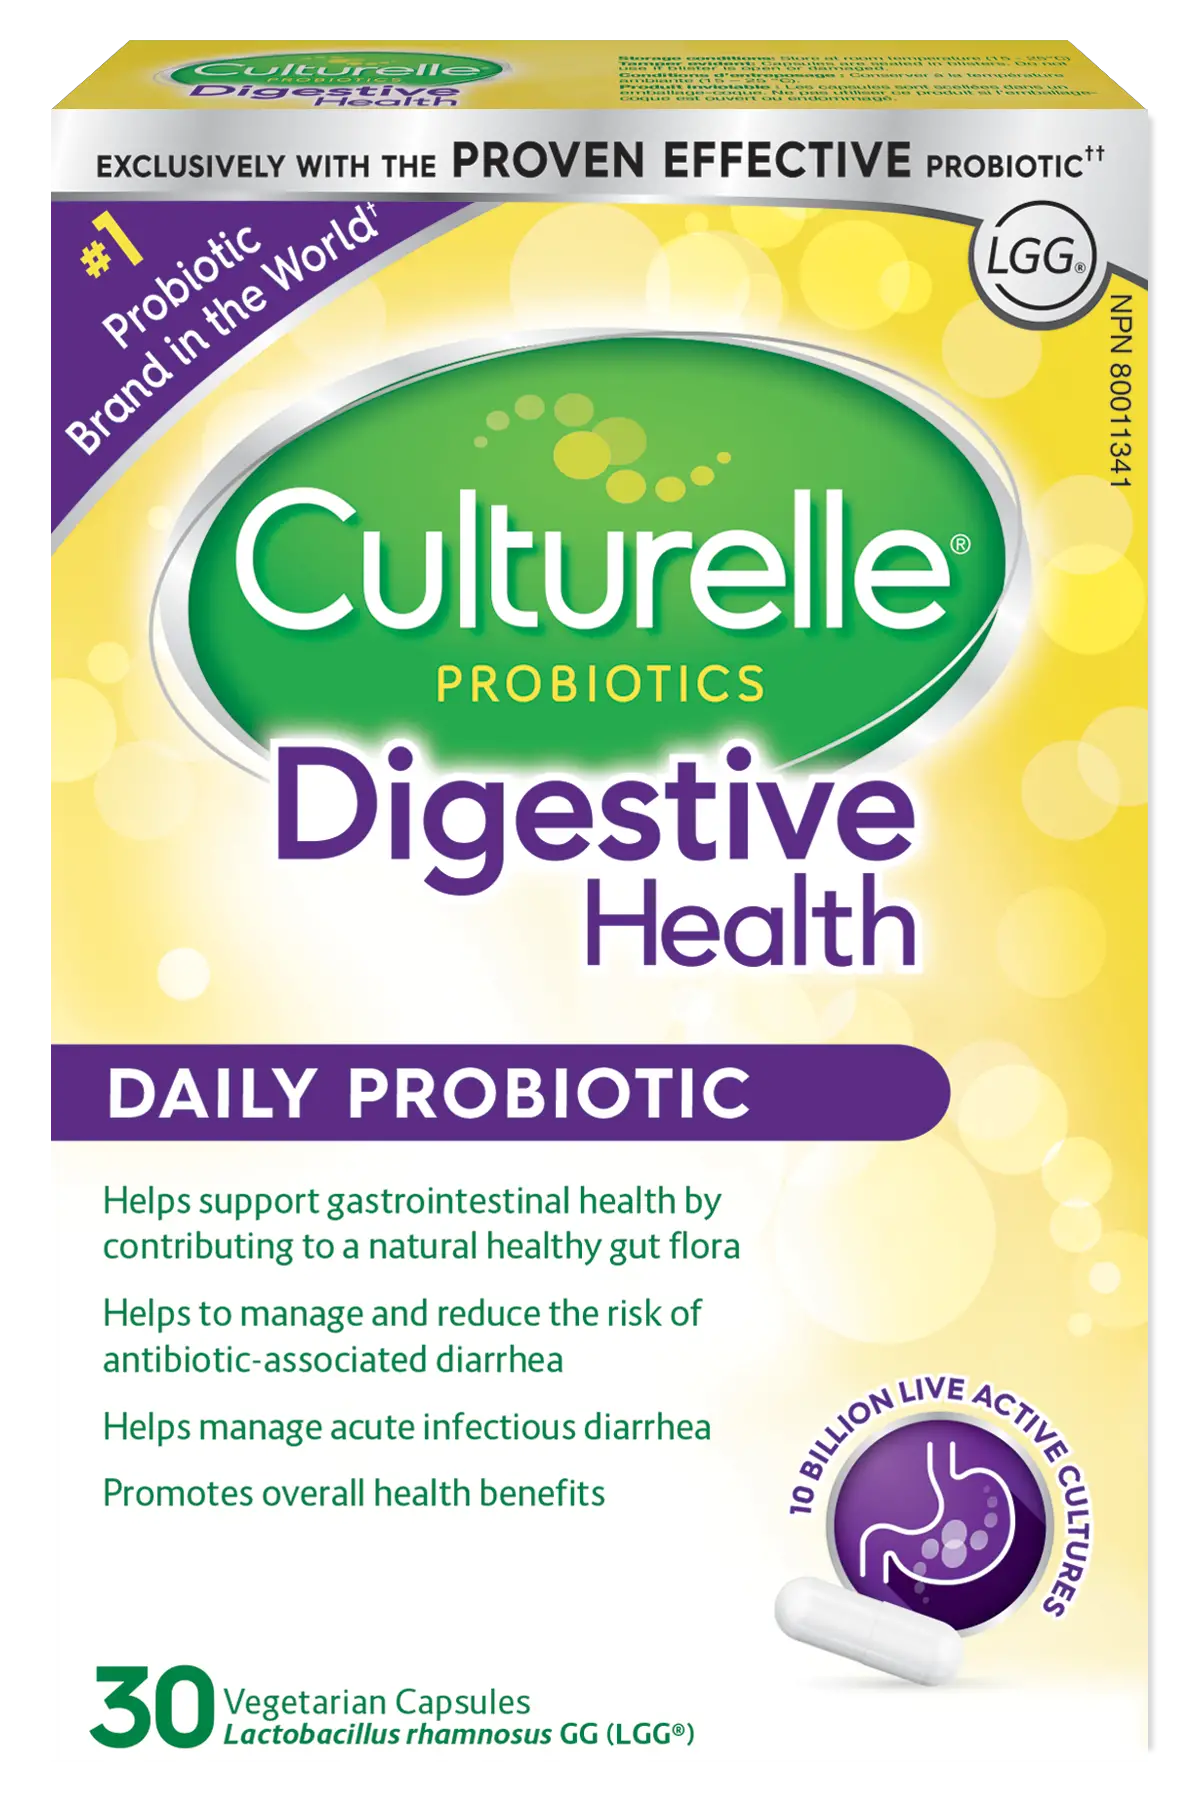 Try Probiotics Capsules from Culturelle®